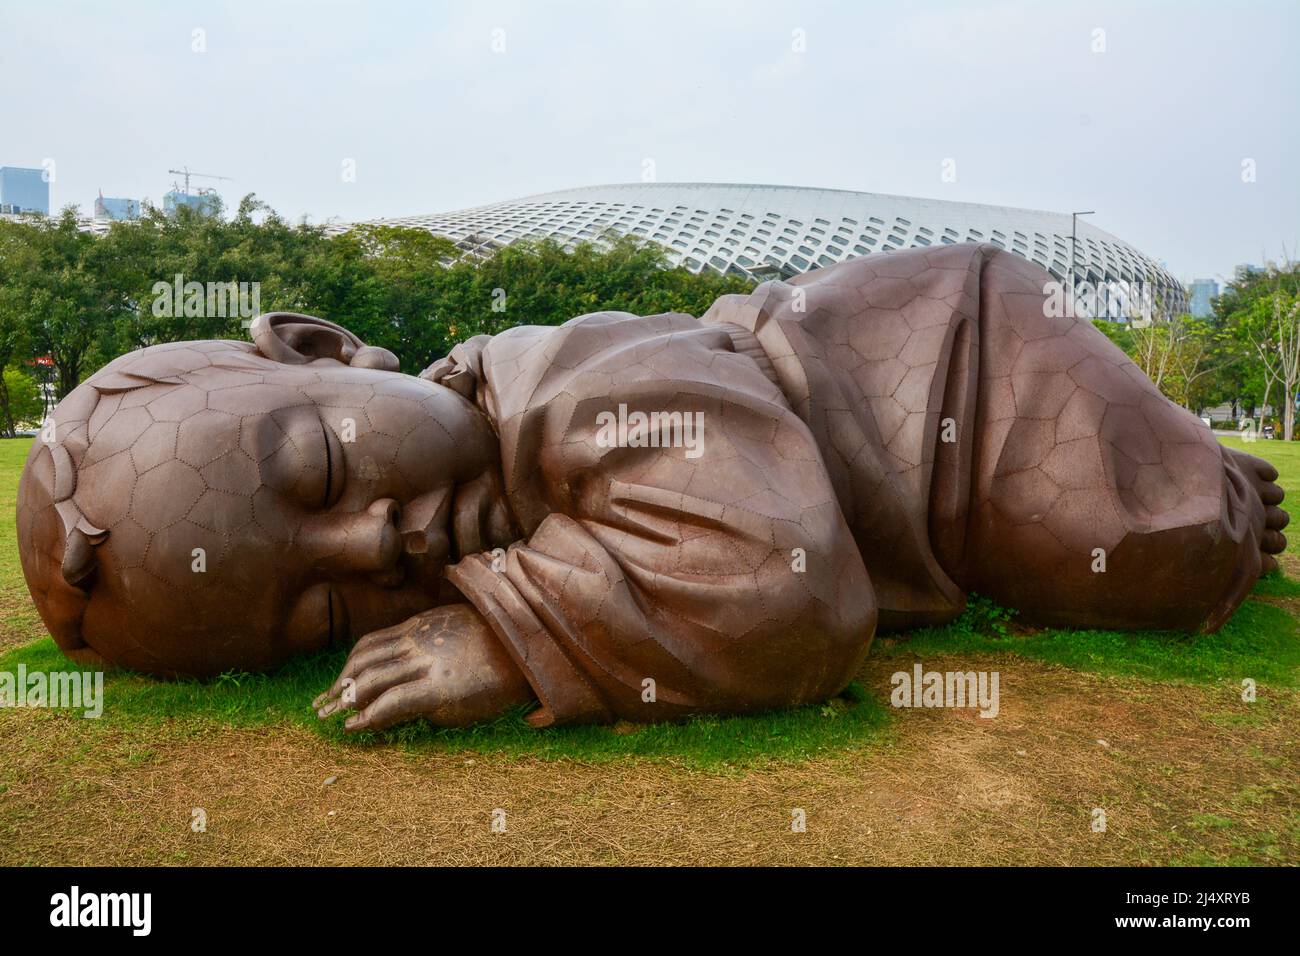 Sculpture de bébé dans le Talent Park, Shenzhen, Chine. Pas de détails de l'artiste juste la caractéristique au milieu de l'herbe. Banque D'Images